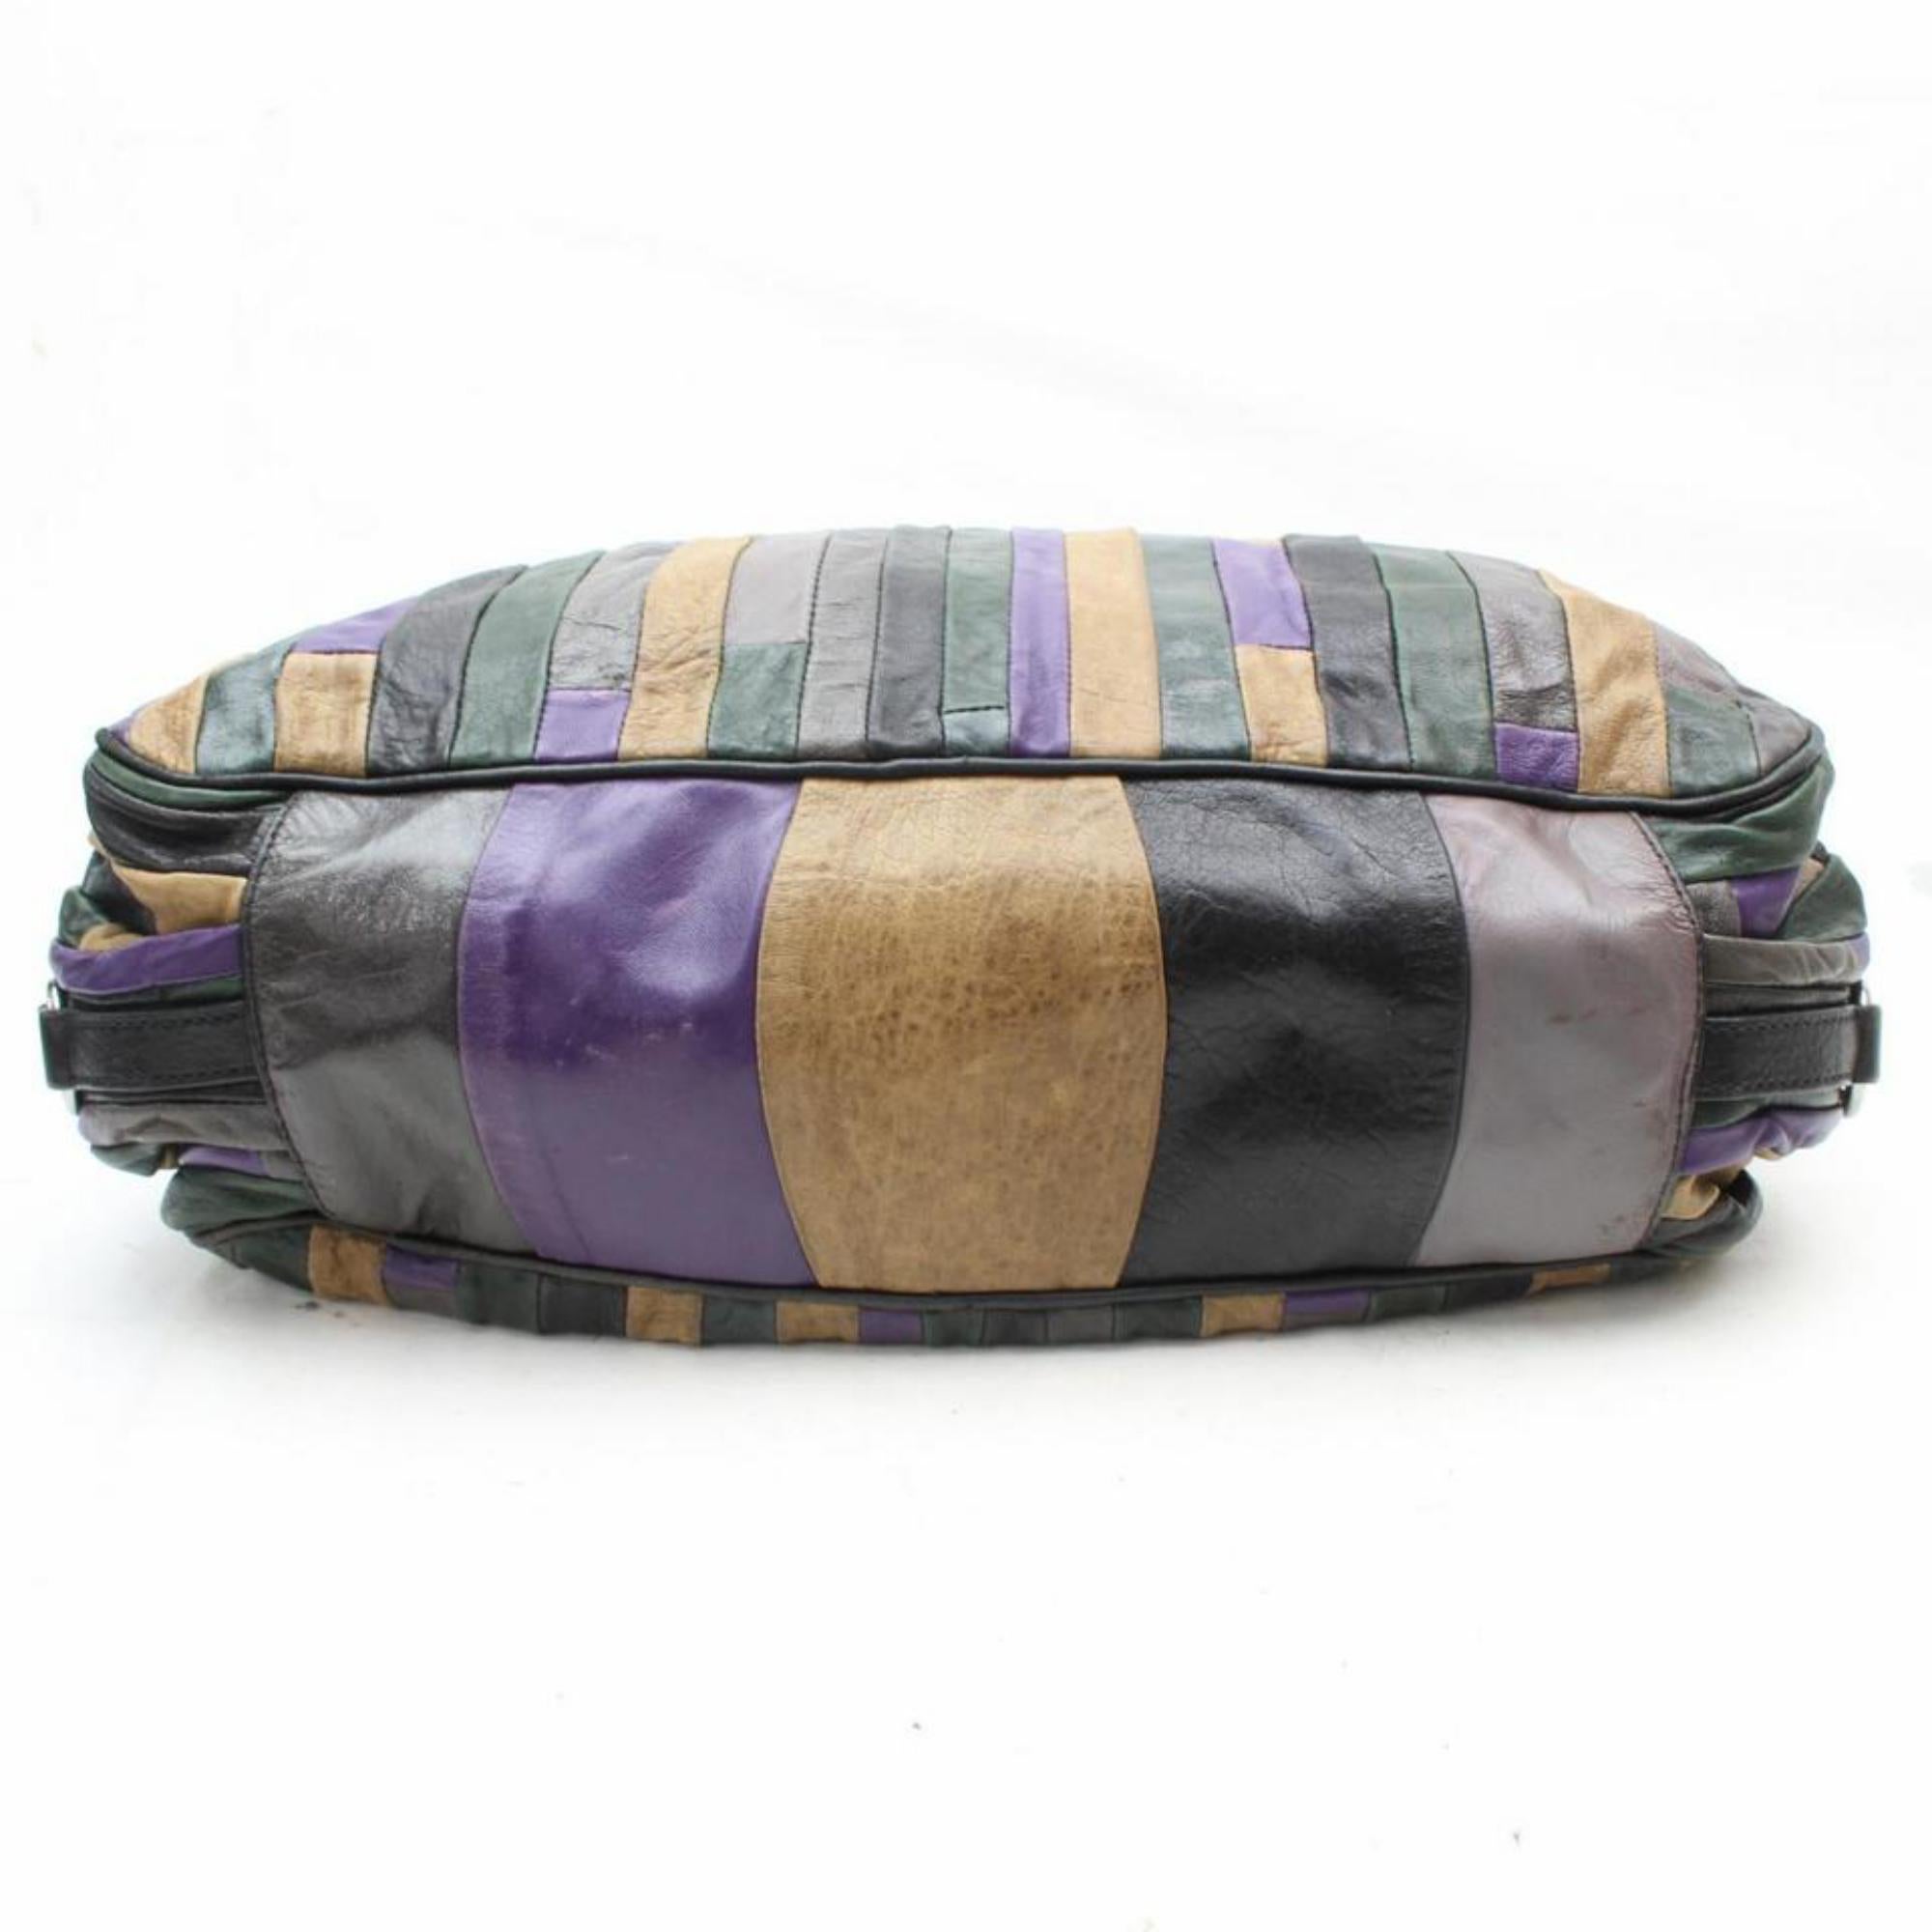 Miu Miu Patchwork Hobo 869478 Multi Color Leather Shoulder Bag For Sale 3